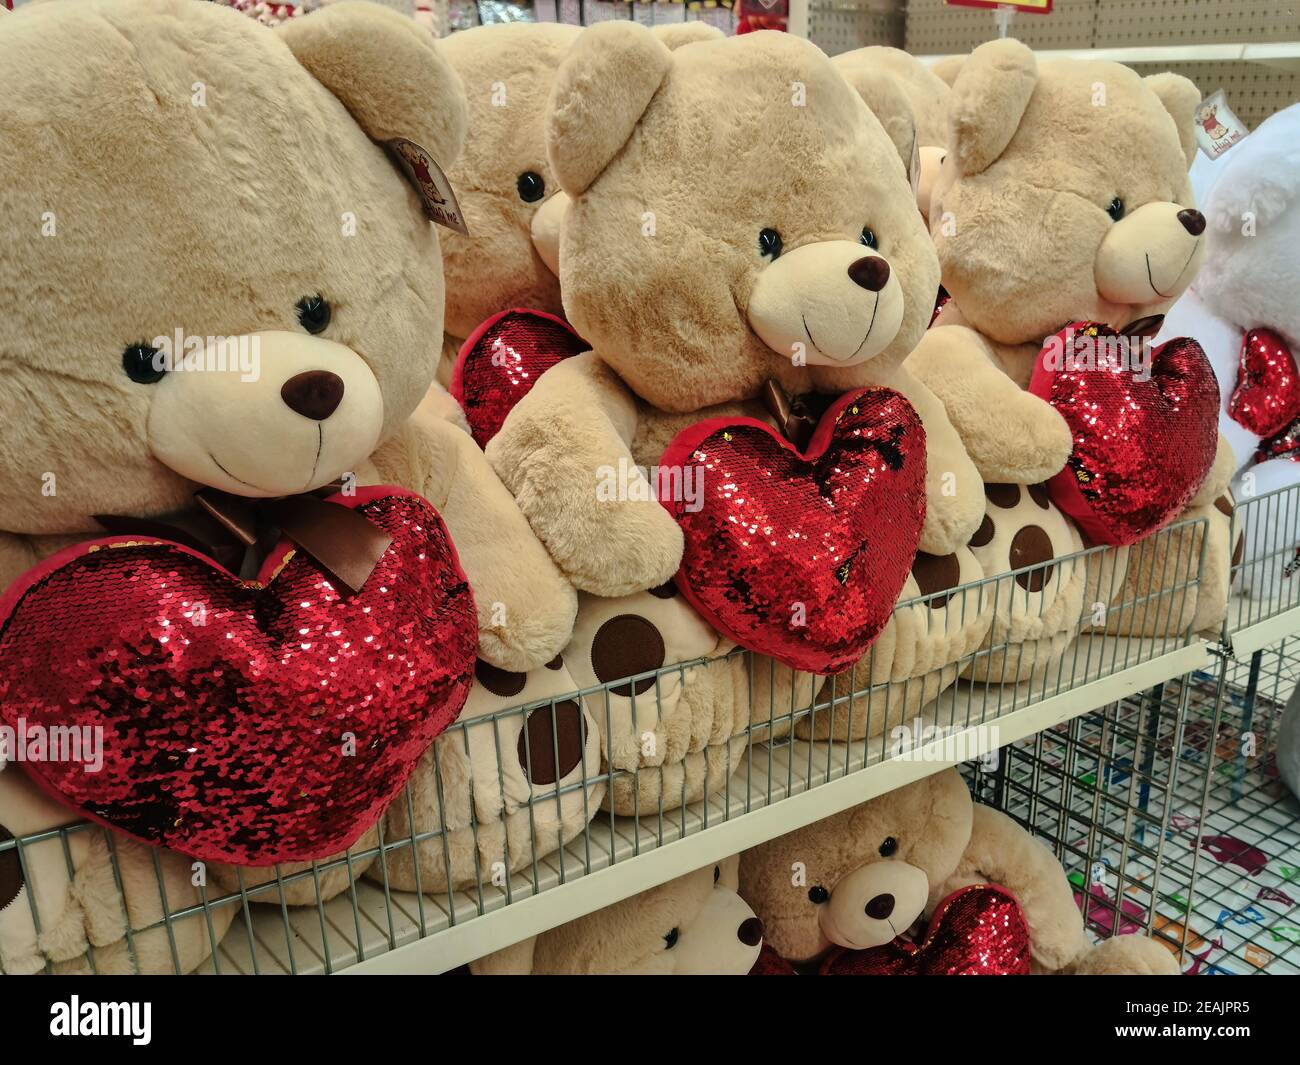 Thessaloniki, Griechenland - Januar 21 2021: Happy Valentines Day Teddybären Shop Schaufenster. Innenansicht der romantischen Liebe Stofftiere mit Herzen verkauft als Geschenke für die jährliche Februar 14 Fest. Stockfoto